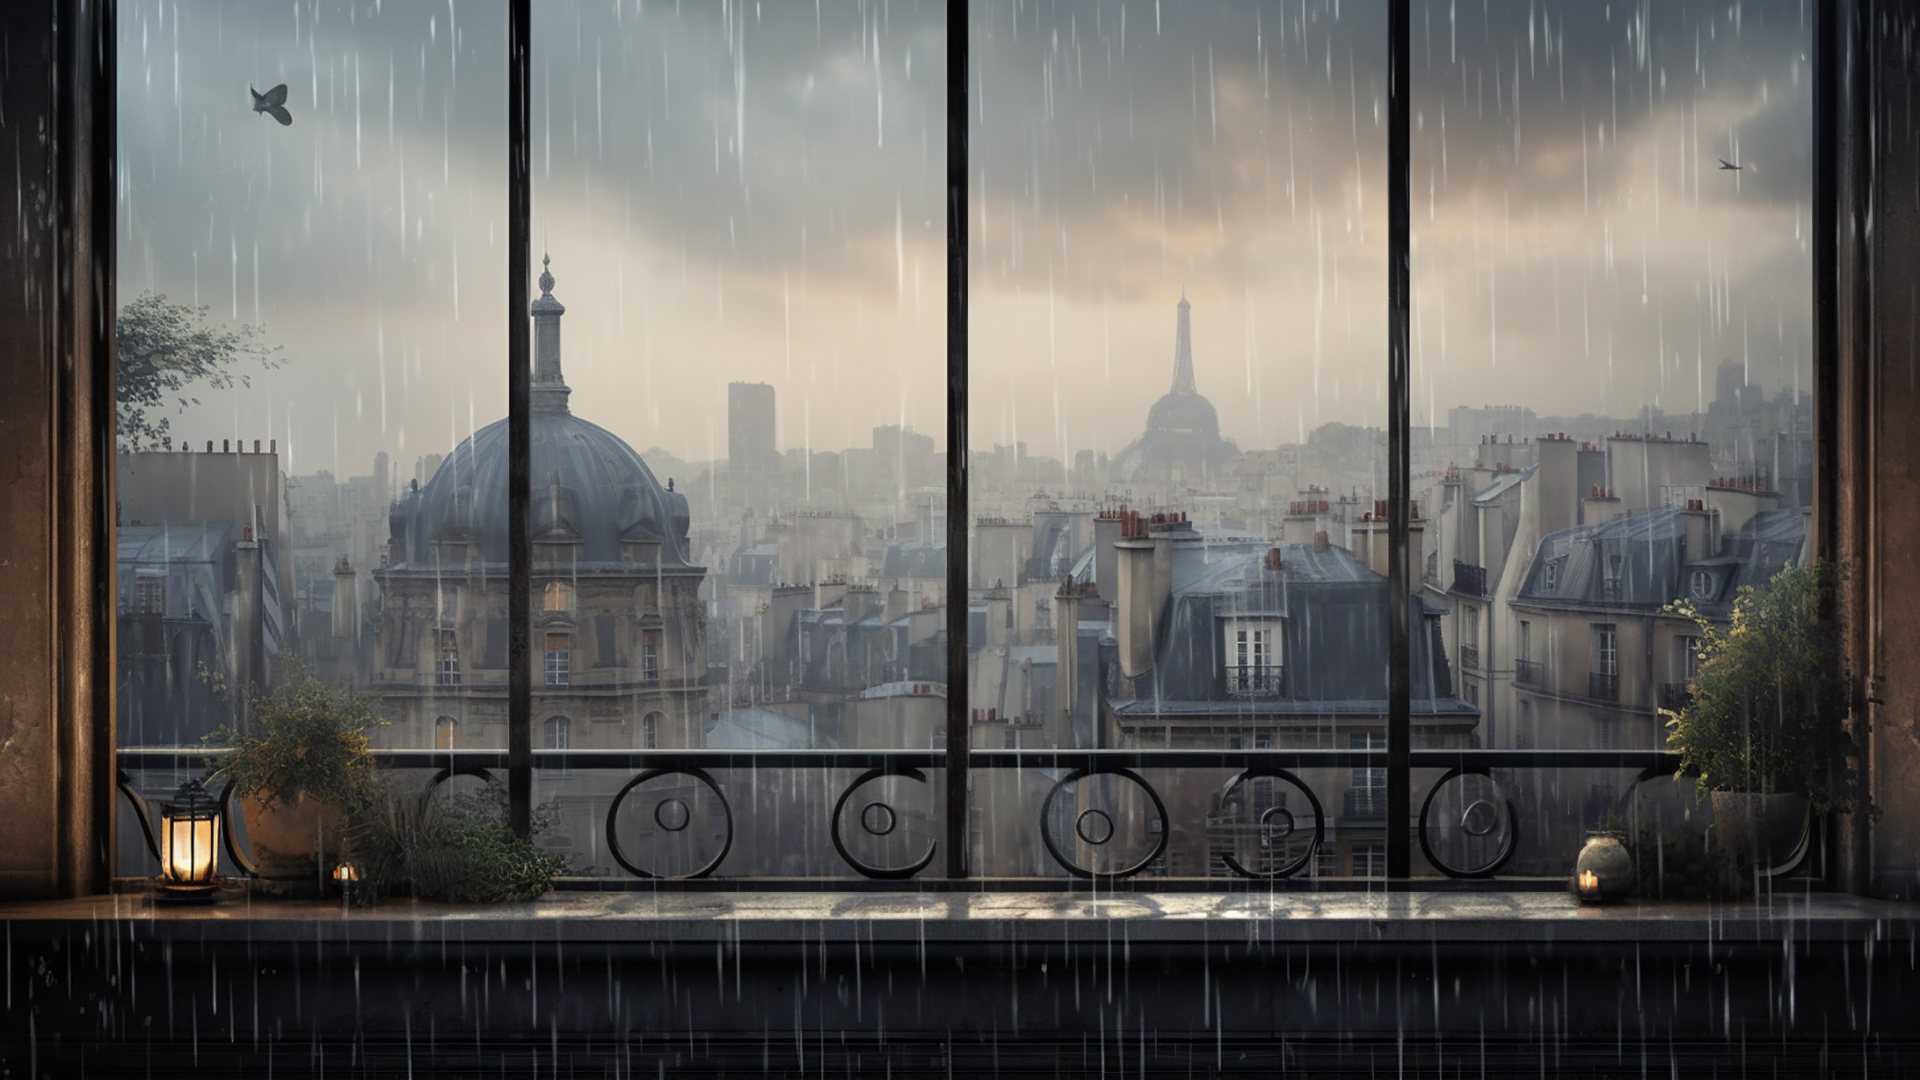 Liquid Harmony with Picturesque Rainy Day Window View